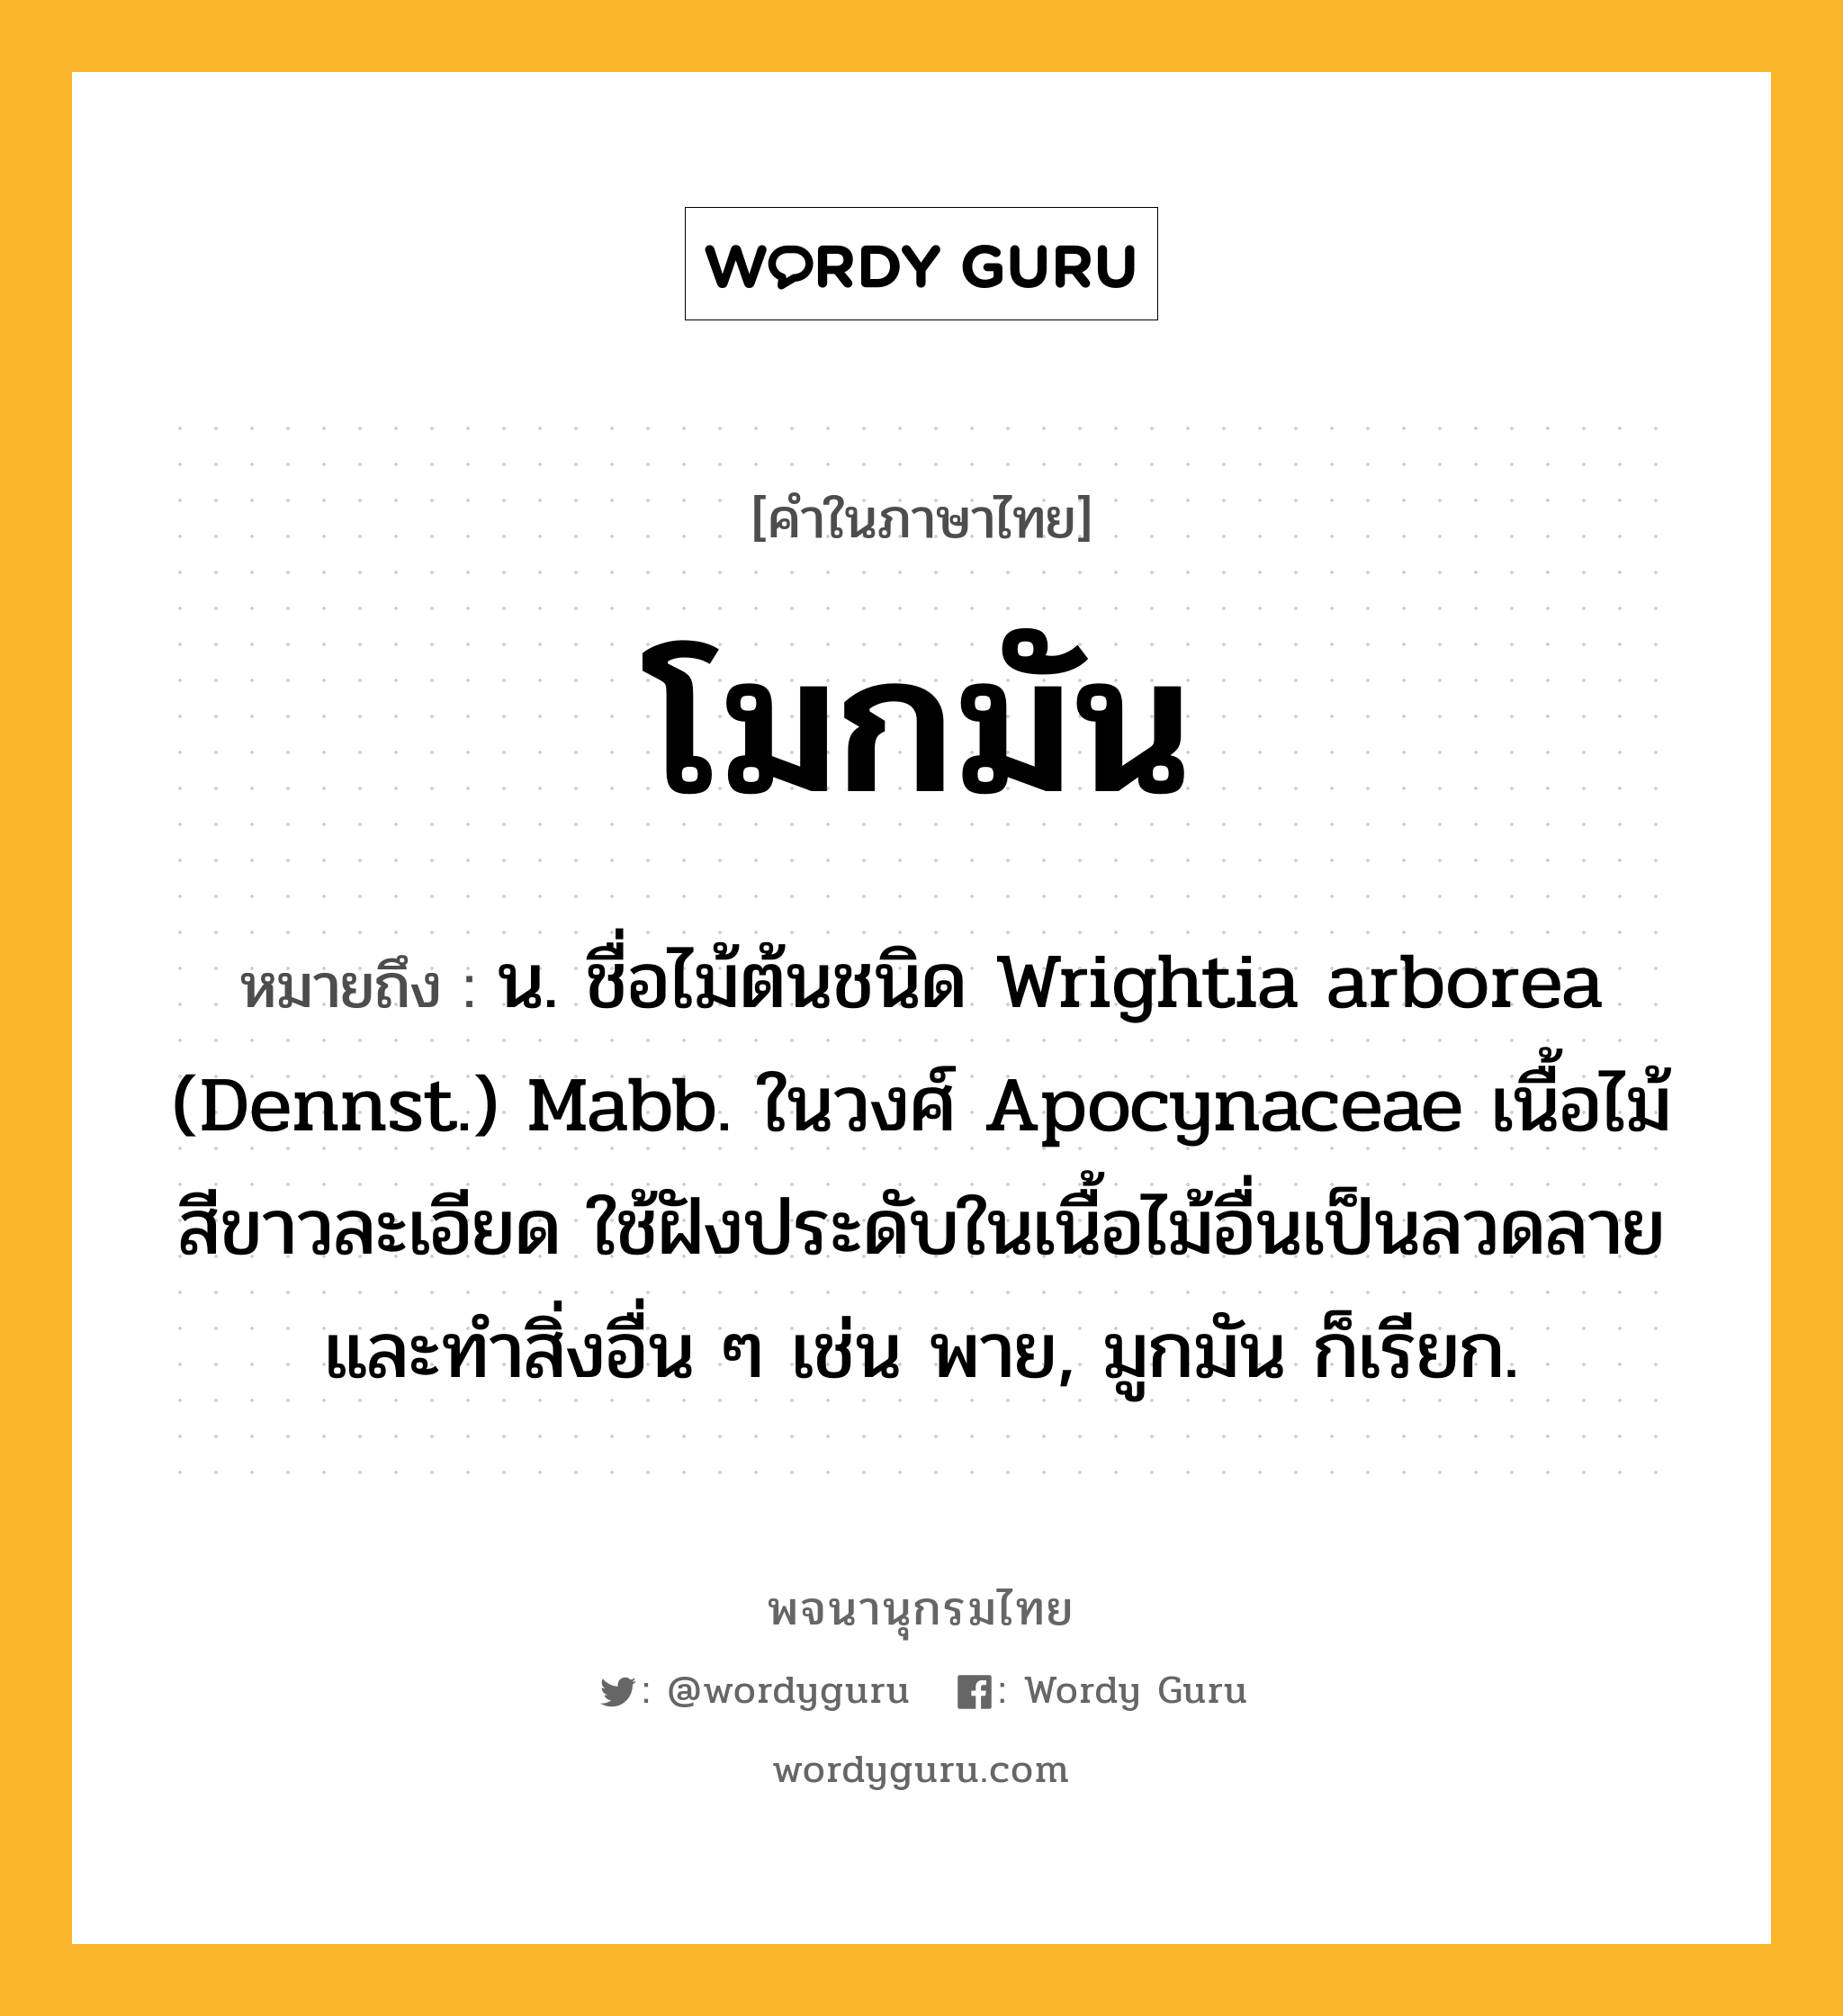 โมกมัน ความหมาย หมายถึงอะไร?, คำในภาษาไทย โมกมัน หมายถึง น. ชื่อไม้ต้นชนิด Wrightia arborea (Dennst.) Mabb. ในวงศ์ Apocynaceae เนื้อไม้สีขาวละเอียด ใช้ฝังประดับในเนื้อไม้อื่นเป็นลวดลาย และทําสิ่งอื่น ๆ เช่น พาย, มูกมัน ก็เรียก.